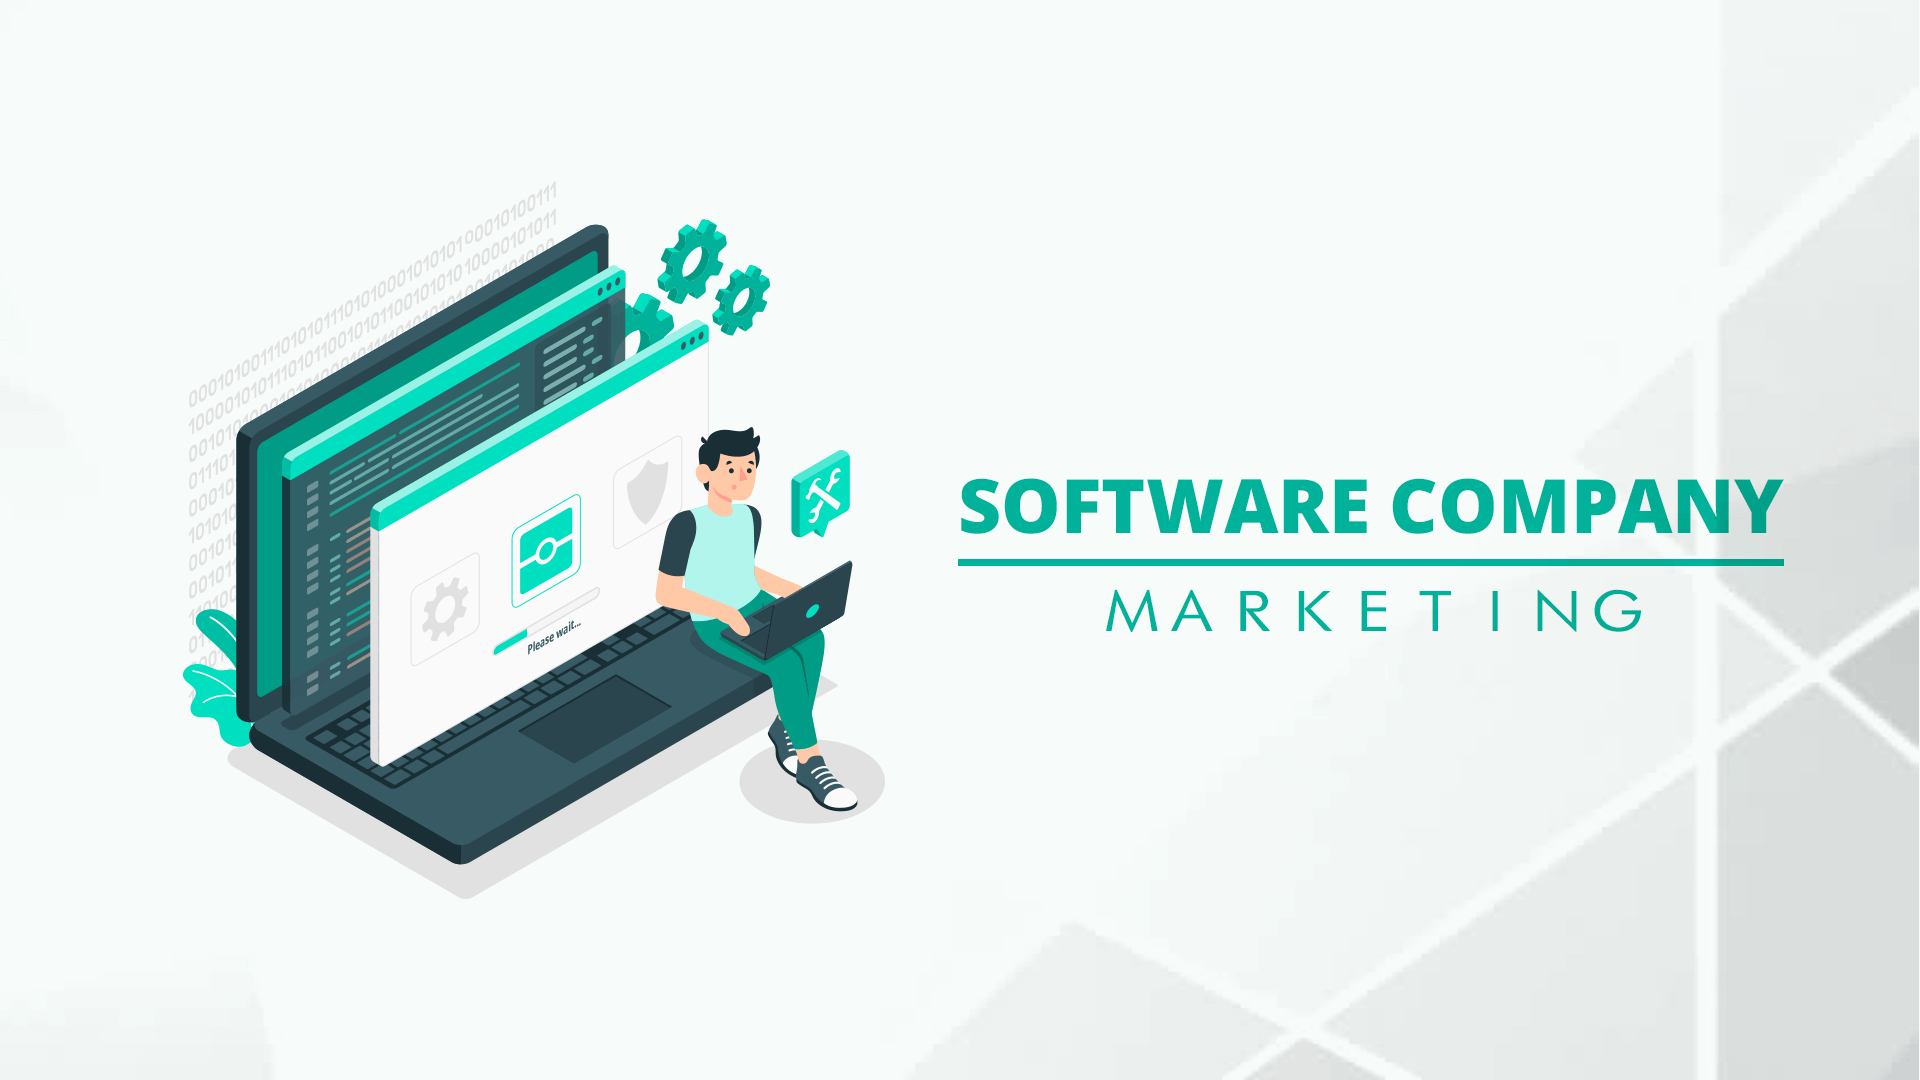 Software company marketing